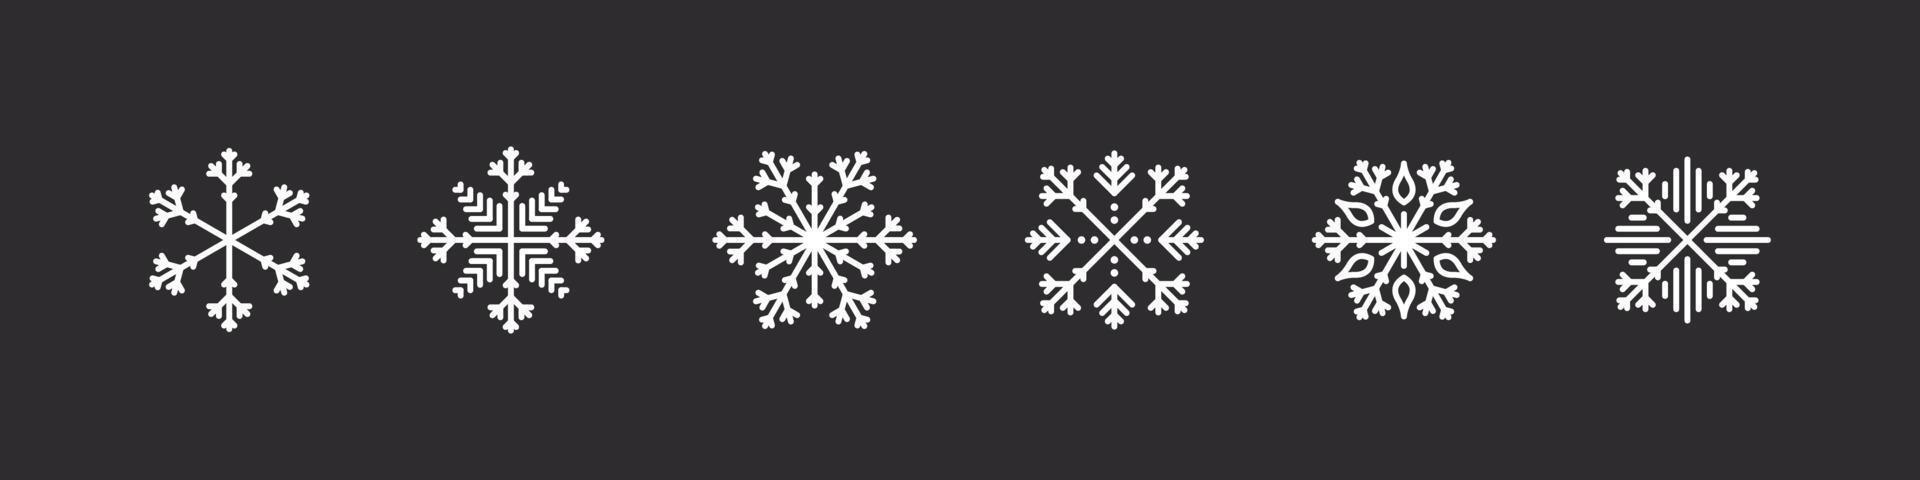 sneeuwvlokken pictogrammen. wit sneeuwvlokken Aan een donker achtergrond. Kerstmis tekens. verzameling van hoog kwaliteit sneeuwvlokken. vector illustratie